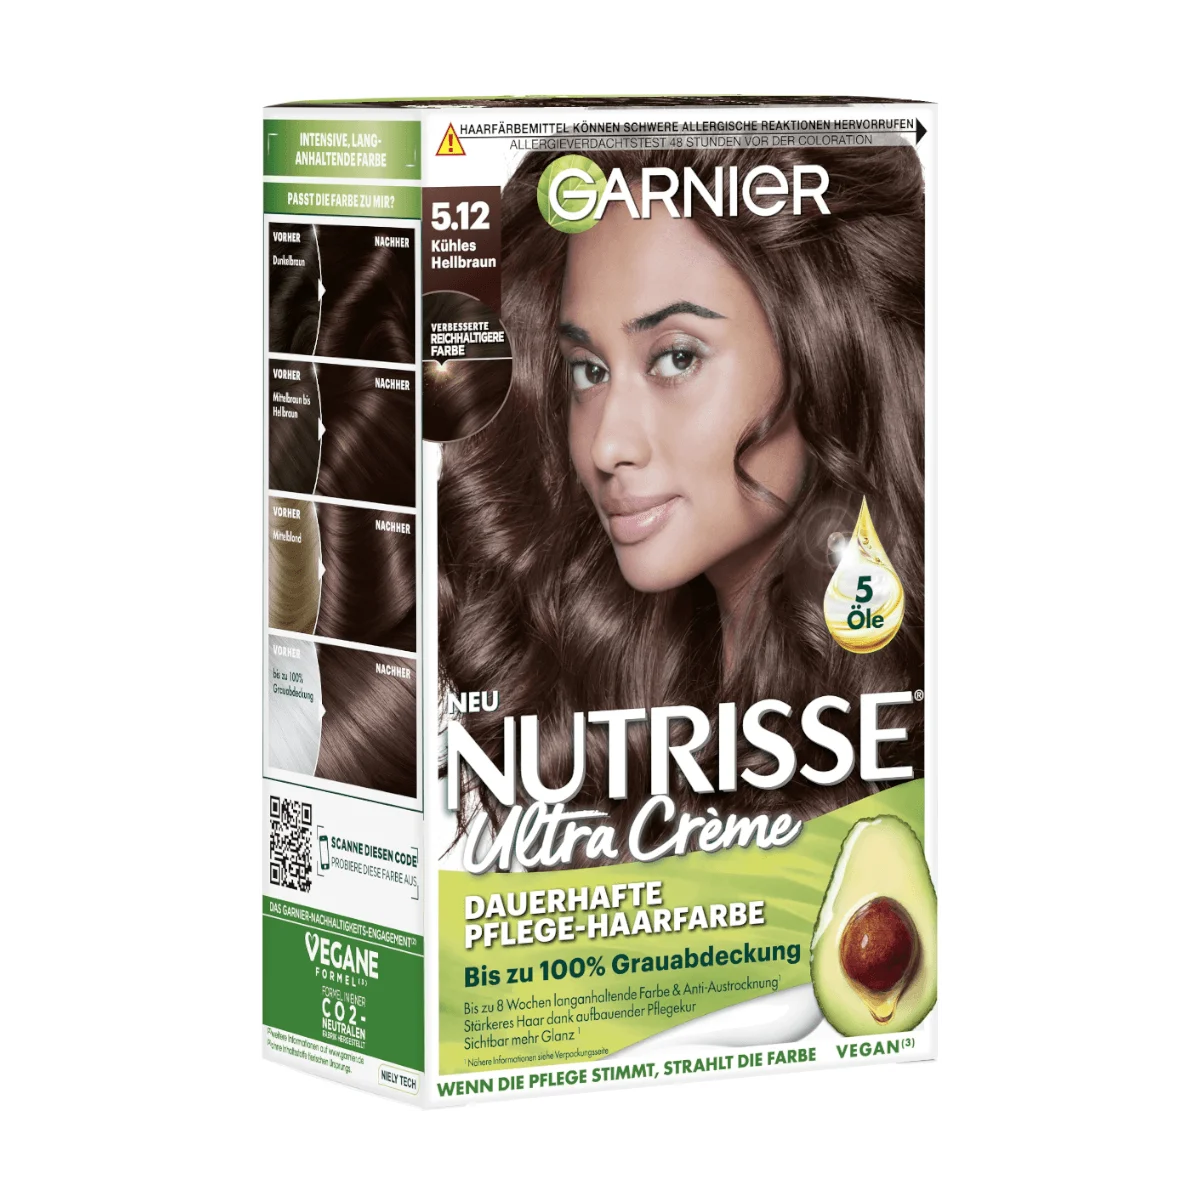 Garnier Nutrisse Ultra Creme Haarfarbe 5.12 Kühles Hellbraun, 1 Stk